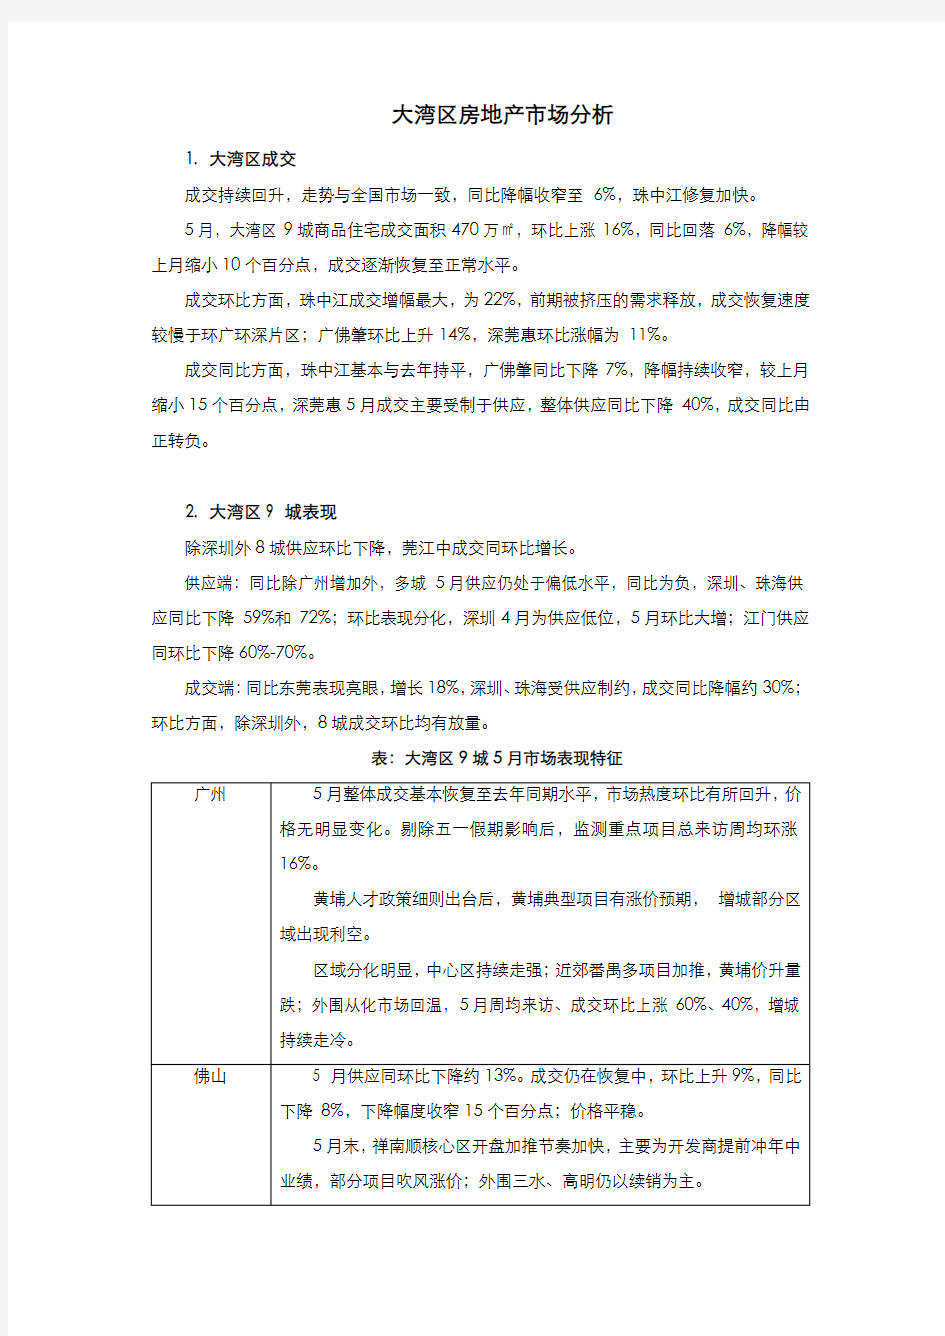 2020年5月广州、深圳、珠海房地产市场研究(大湾区)